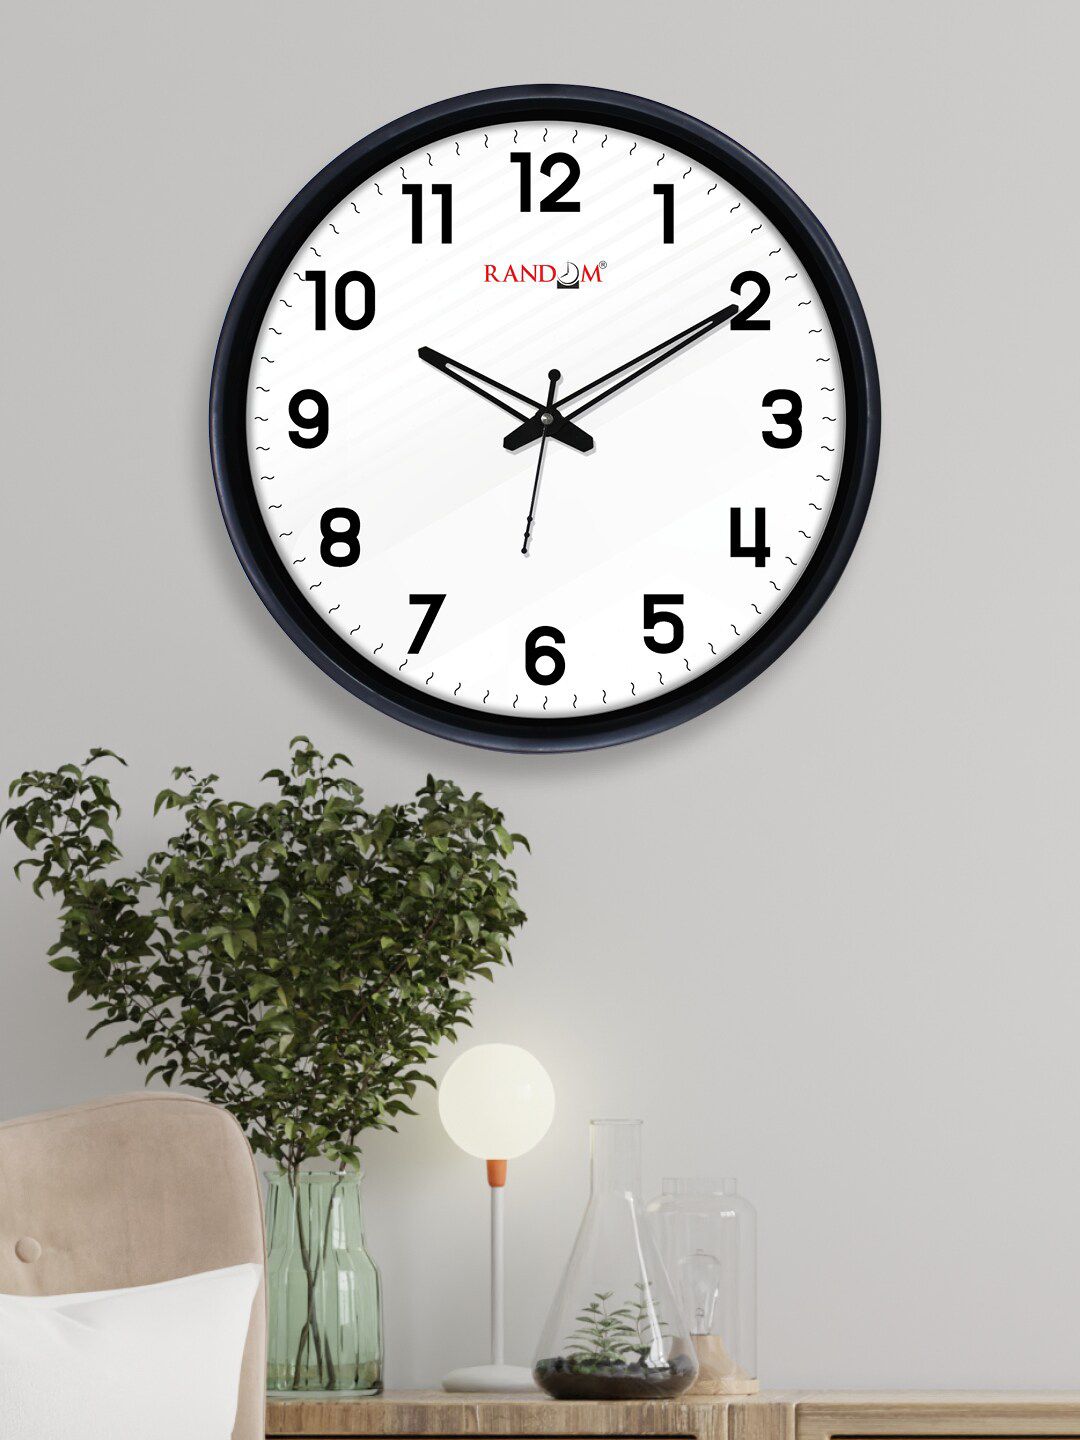 RANDOM Off White & Black Contemporary Wall Clock Price in India